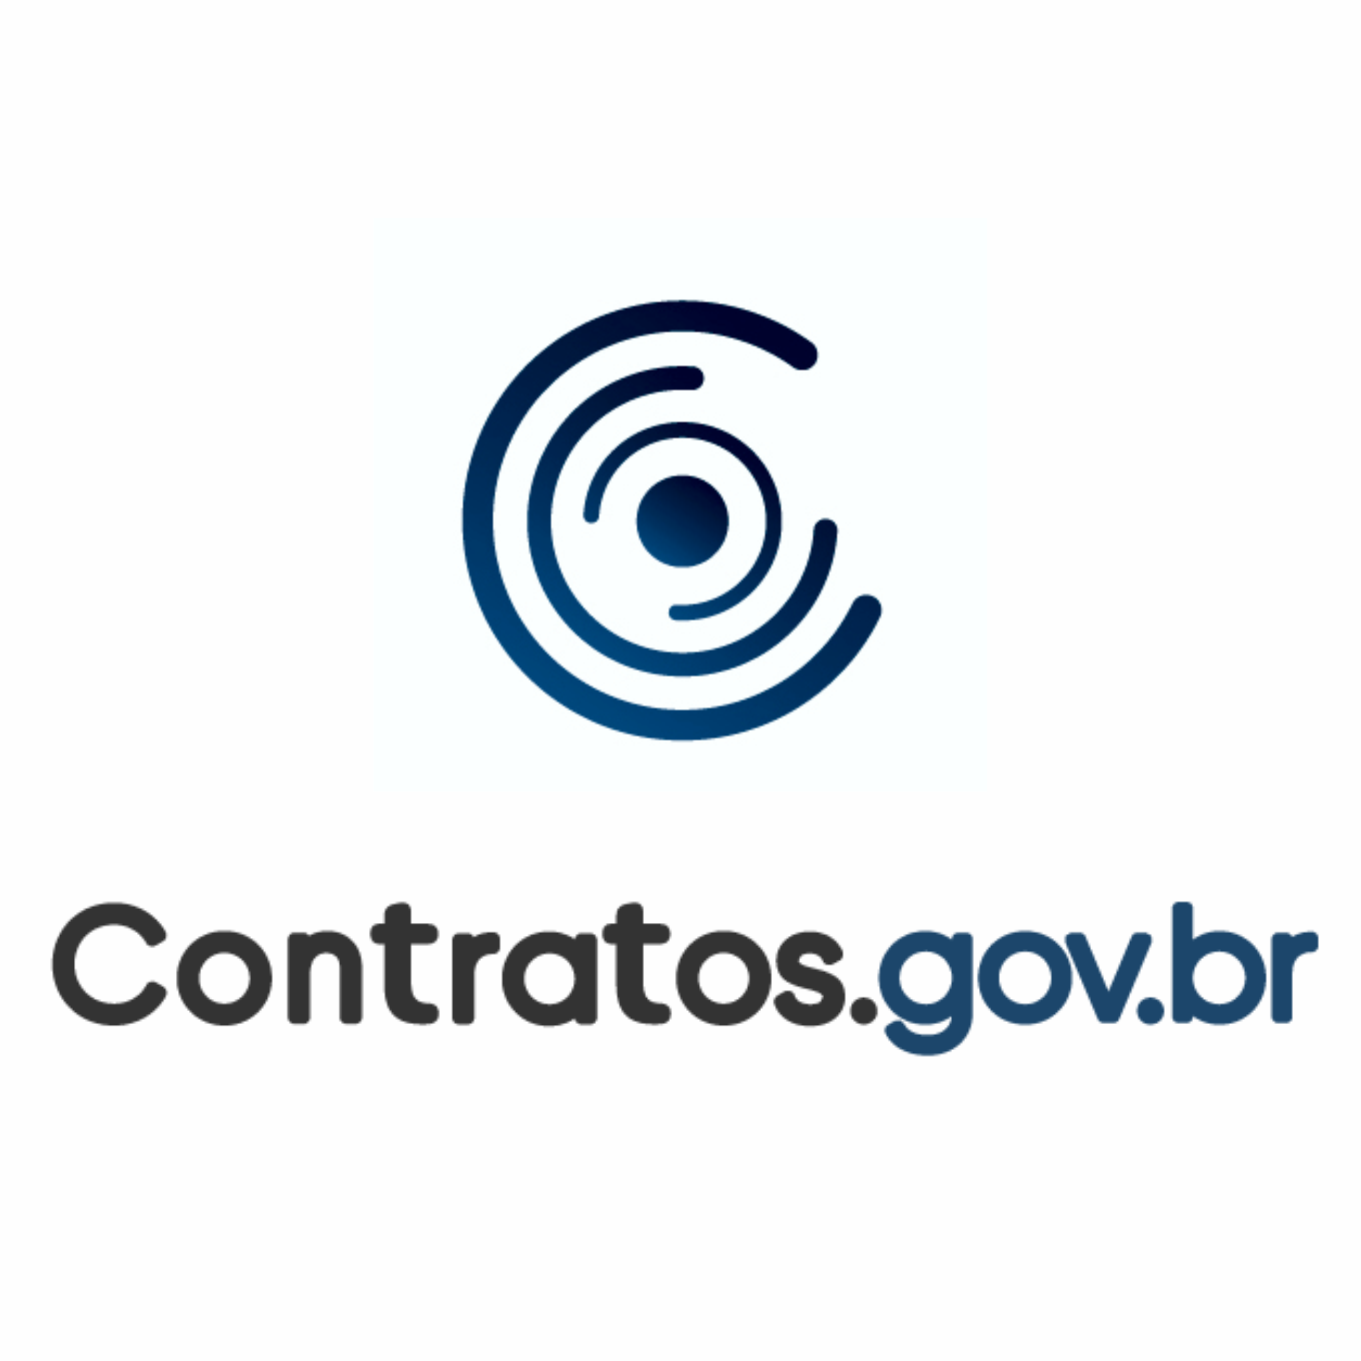 Treinamento Contratos.gov.br - TRE/RJ - Fiscalização 01 - 2023 